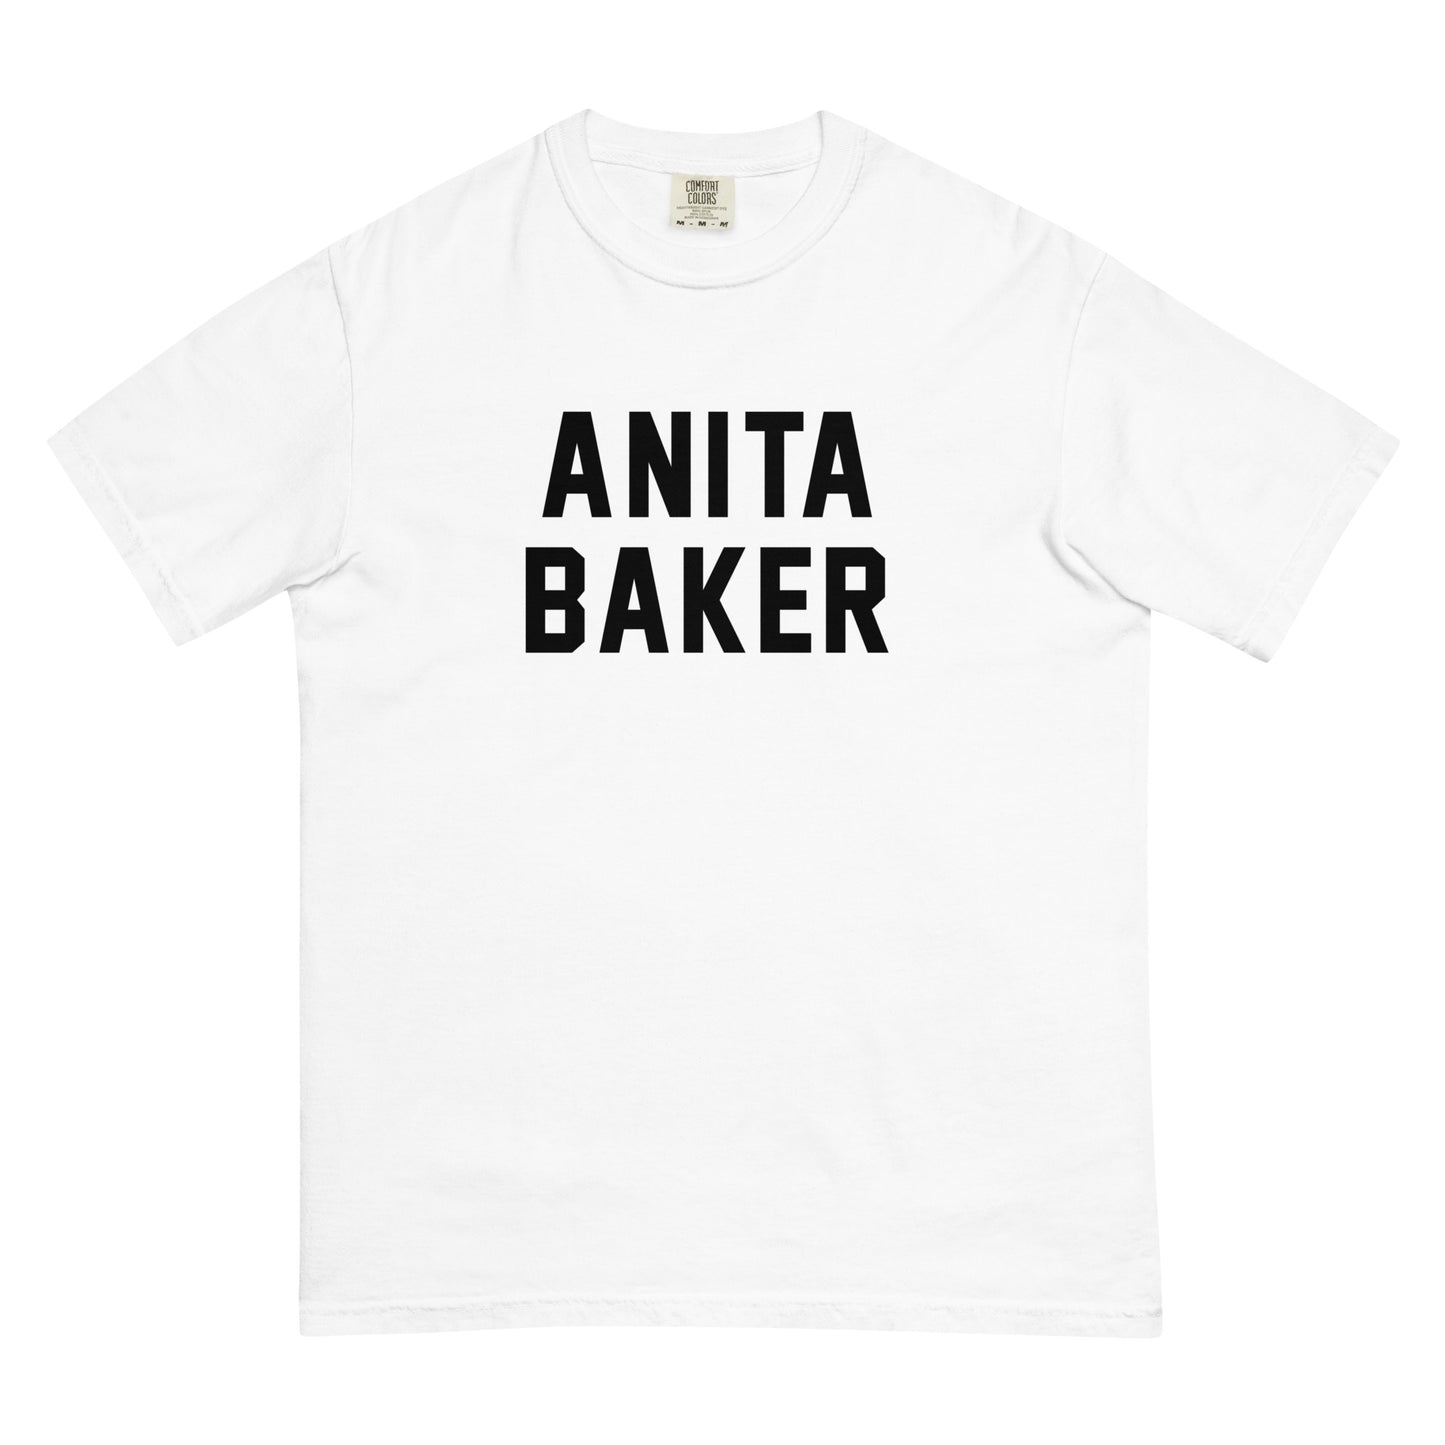 ANITA BAKER